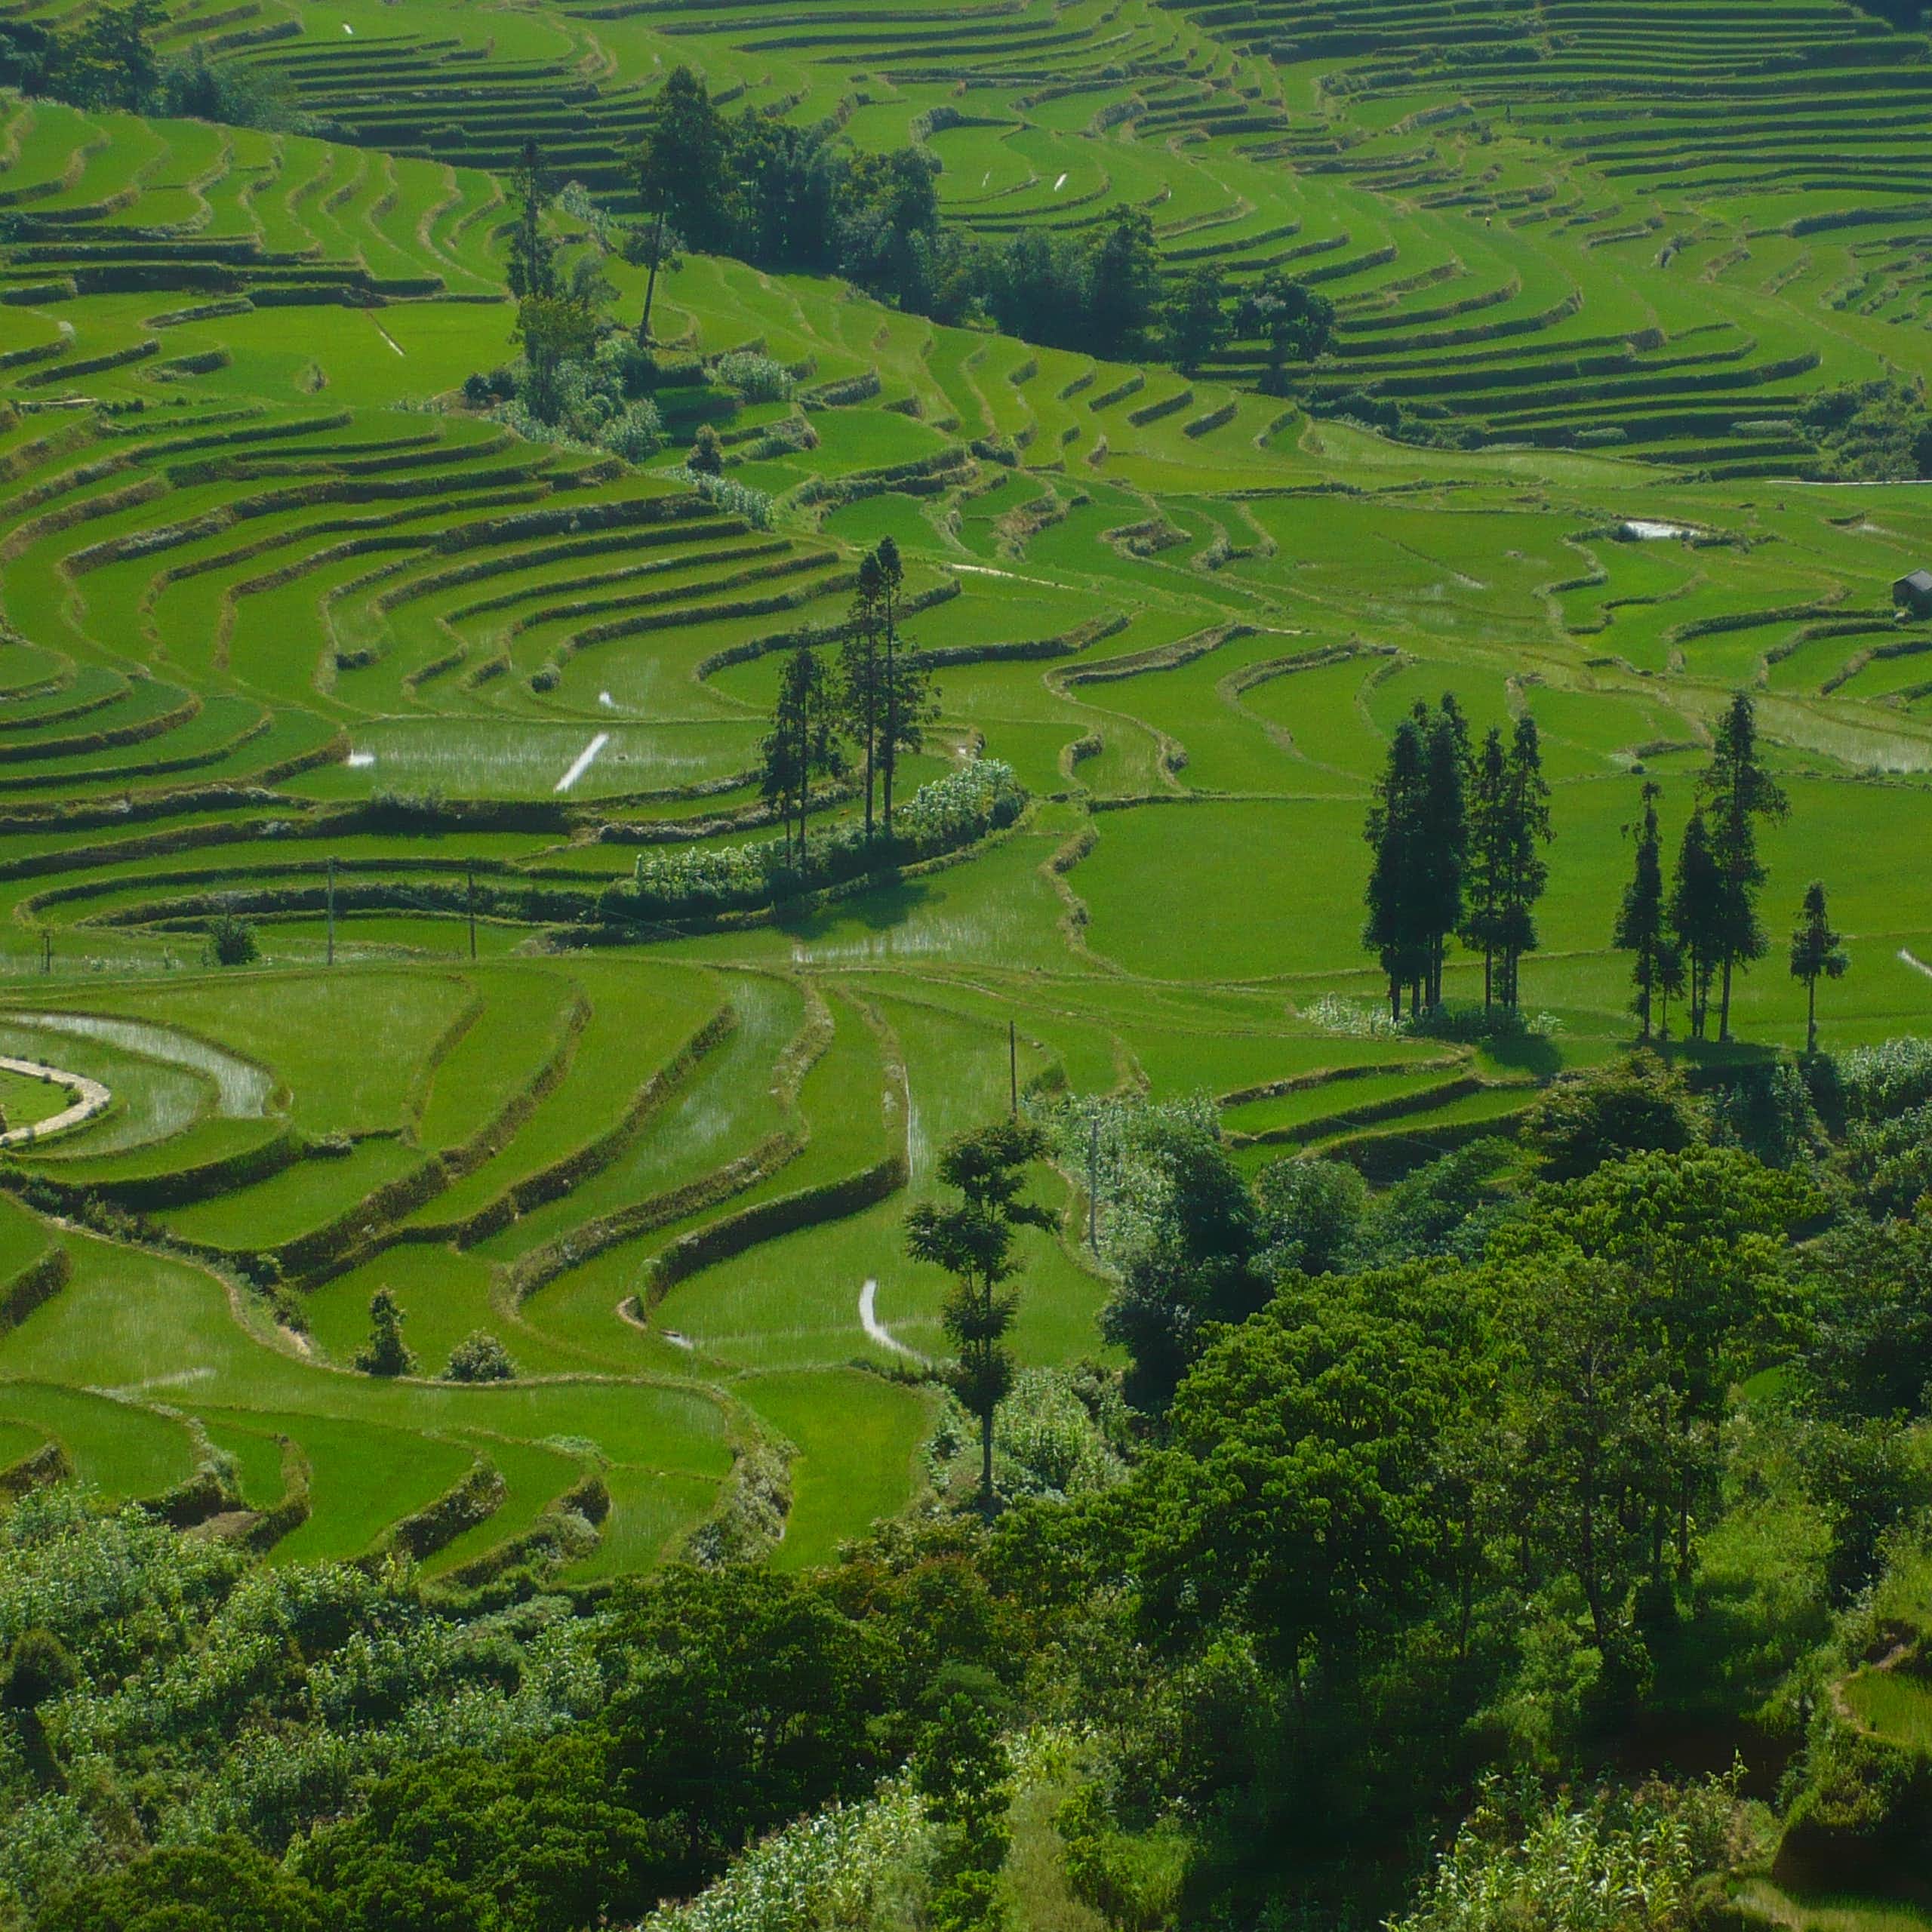 Les terrasses rizicoles du Yuanyang, au Yunnan (Chine) dont la diversité cultivée a inspiré l'équipe de recherche pour lancer des recherches sur les effets bénéfiques de la diversité cultivée.